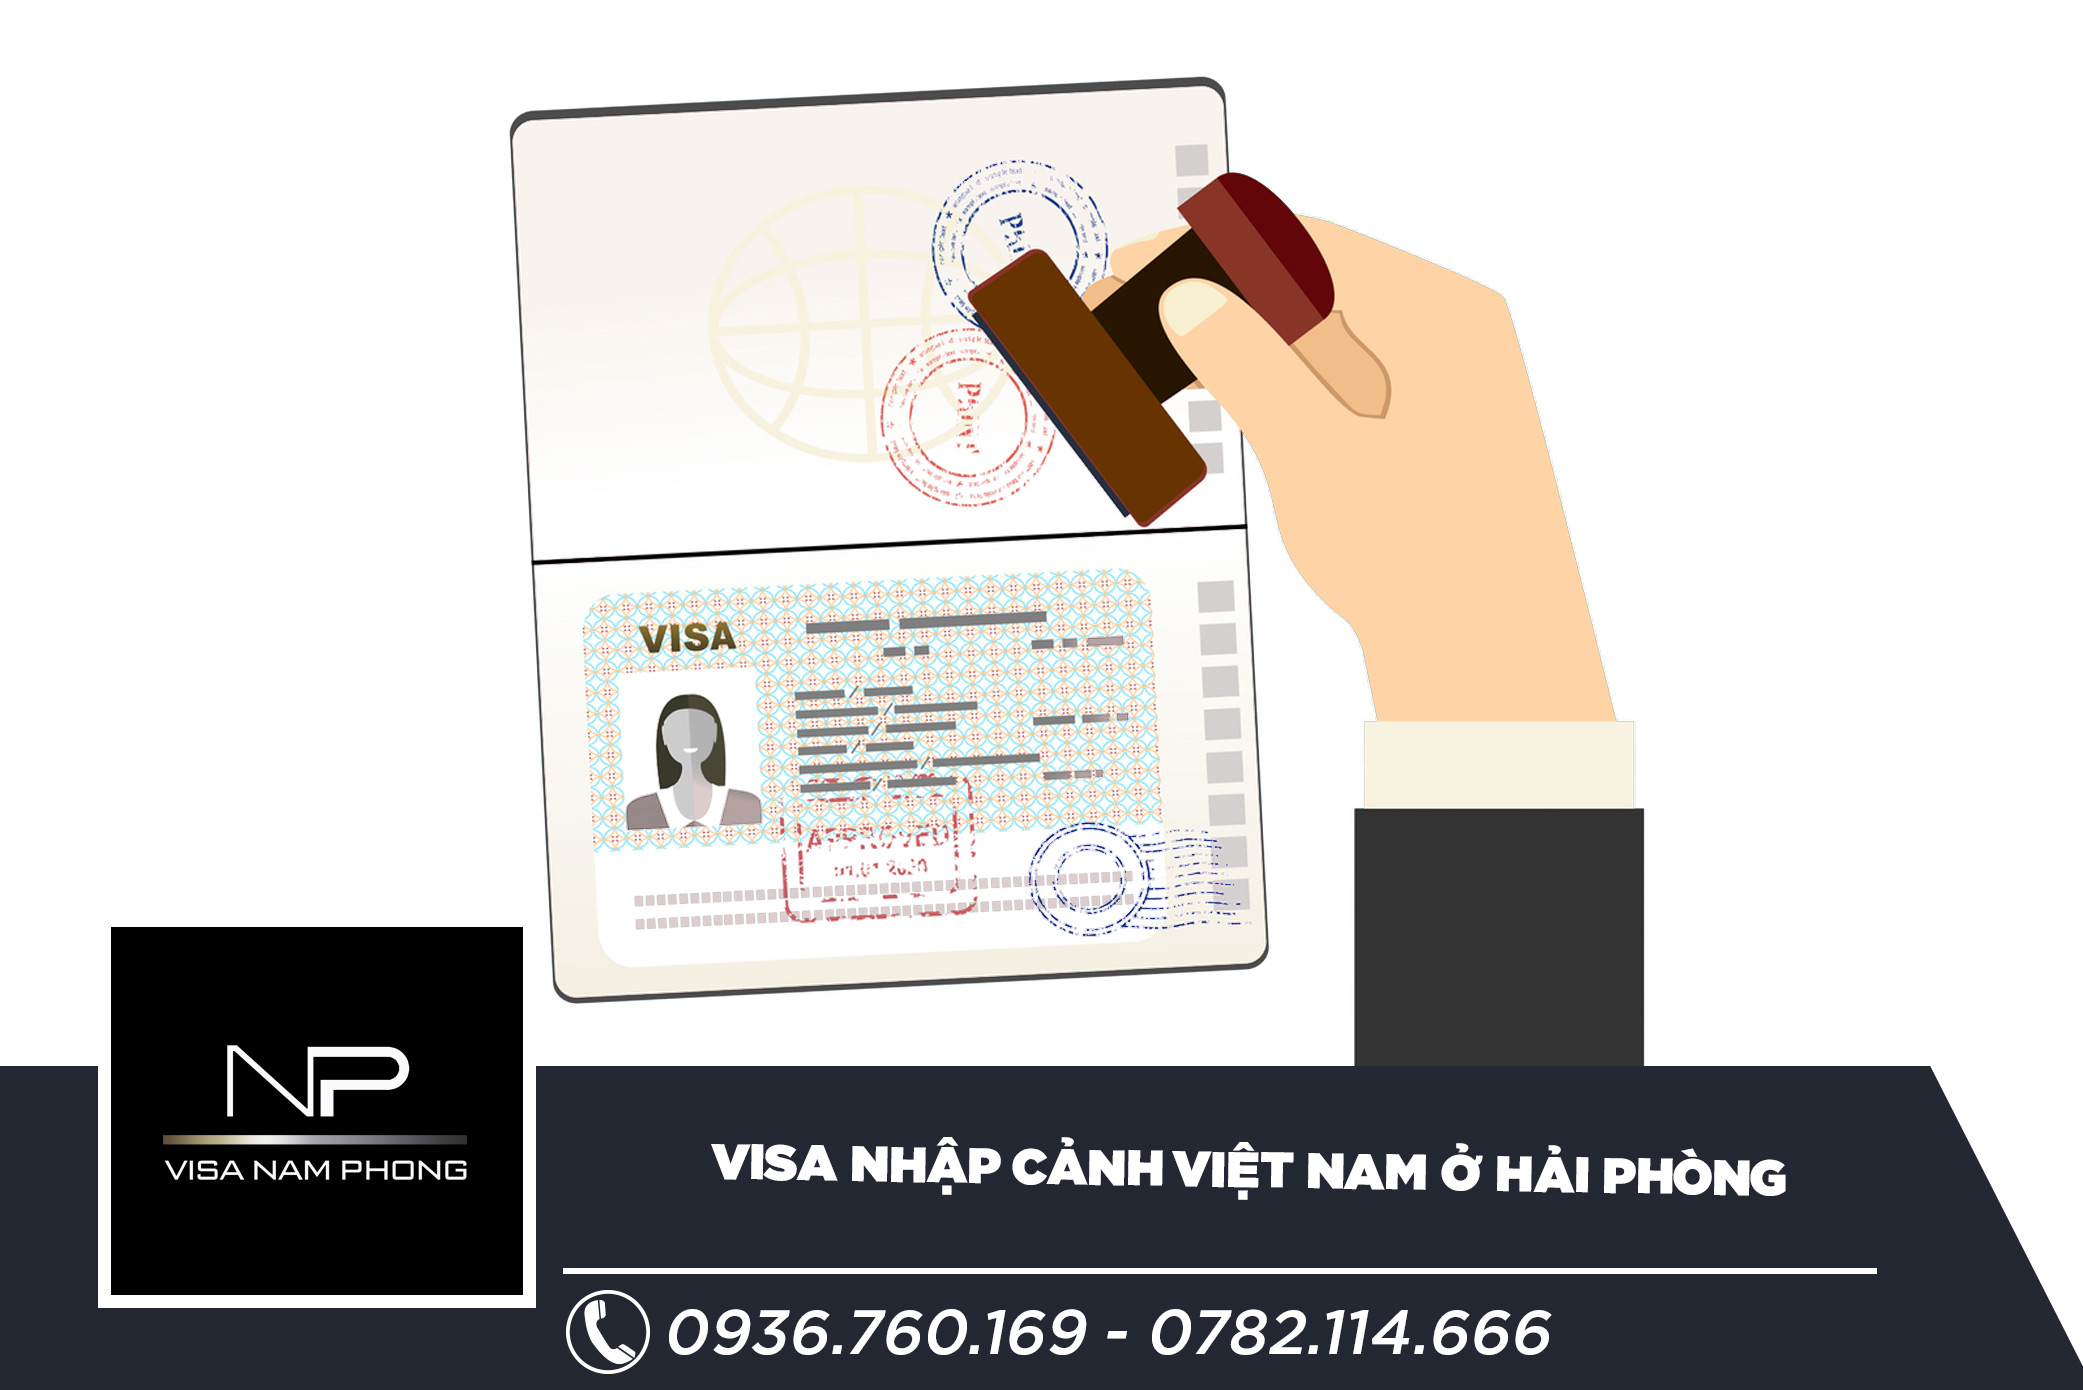 Visa nhập cảnh Việt Nam ở Hải Phòng